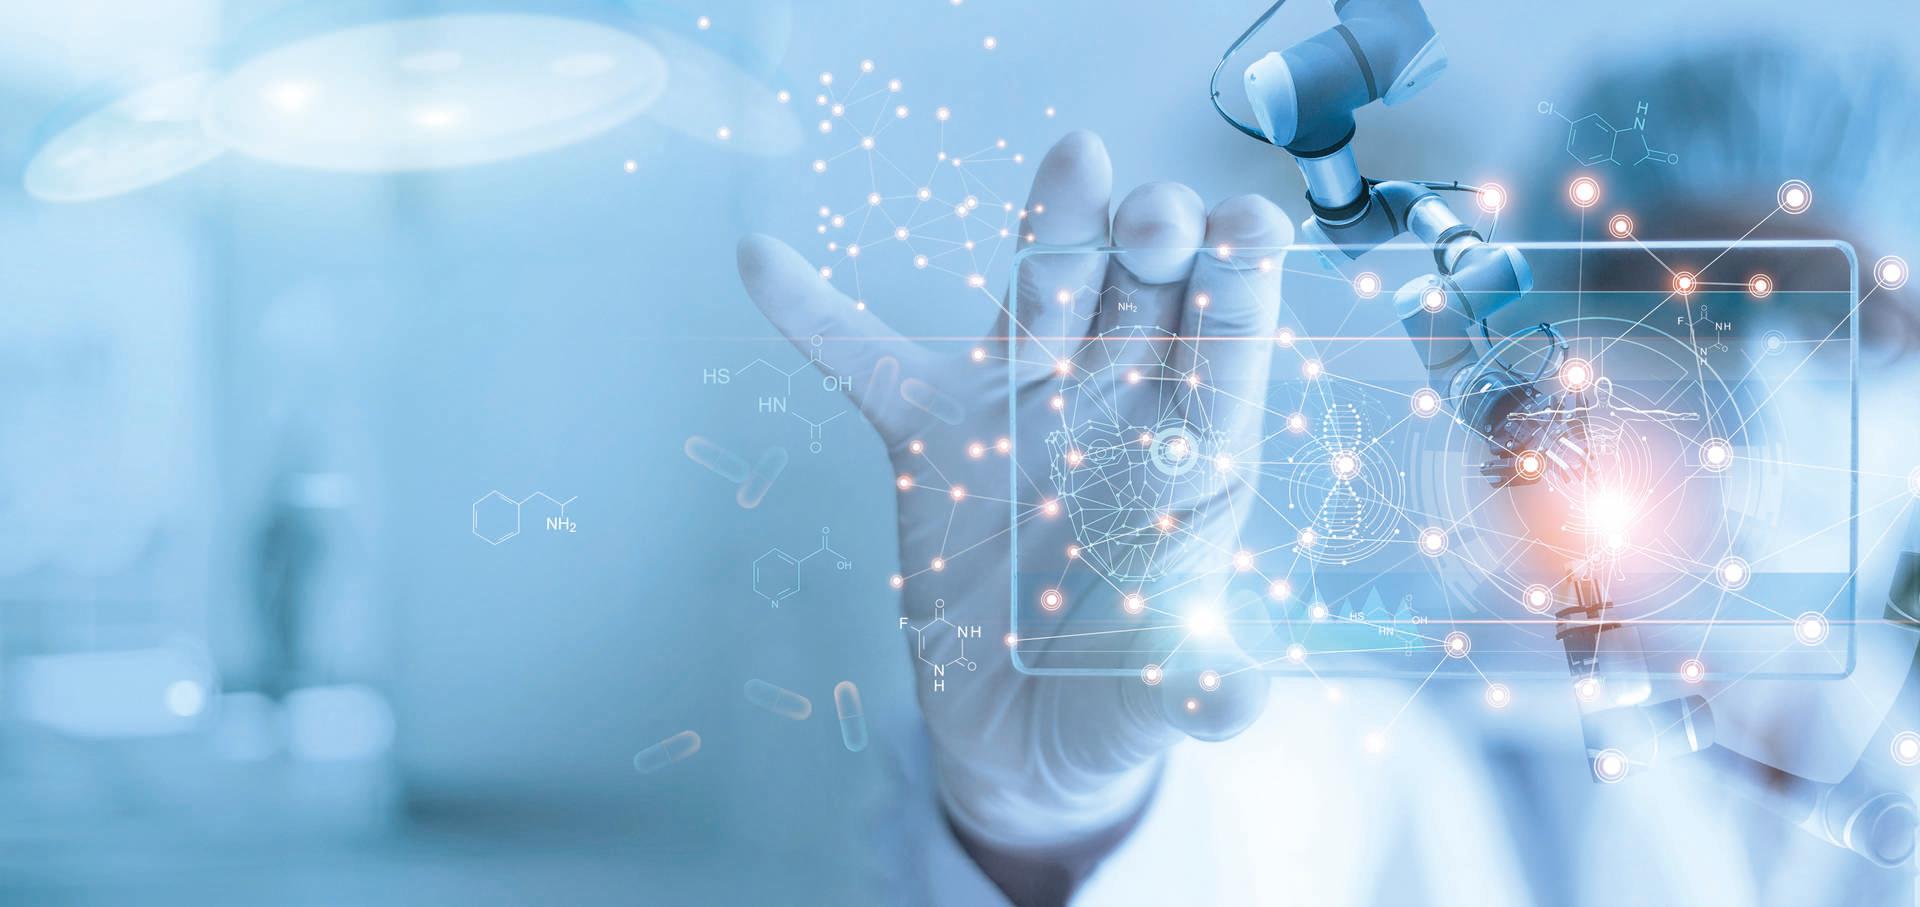 Roboteranalyse und Testergebnis von DNA für Ärzte und medizinische Assistenten auf modernen virtuellen Schnittstellen, Wissenschaft und Technologie, innovativ und zukunftsweisend für die medizinische Gesundheitsversorgung im Laborhintergrund.